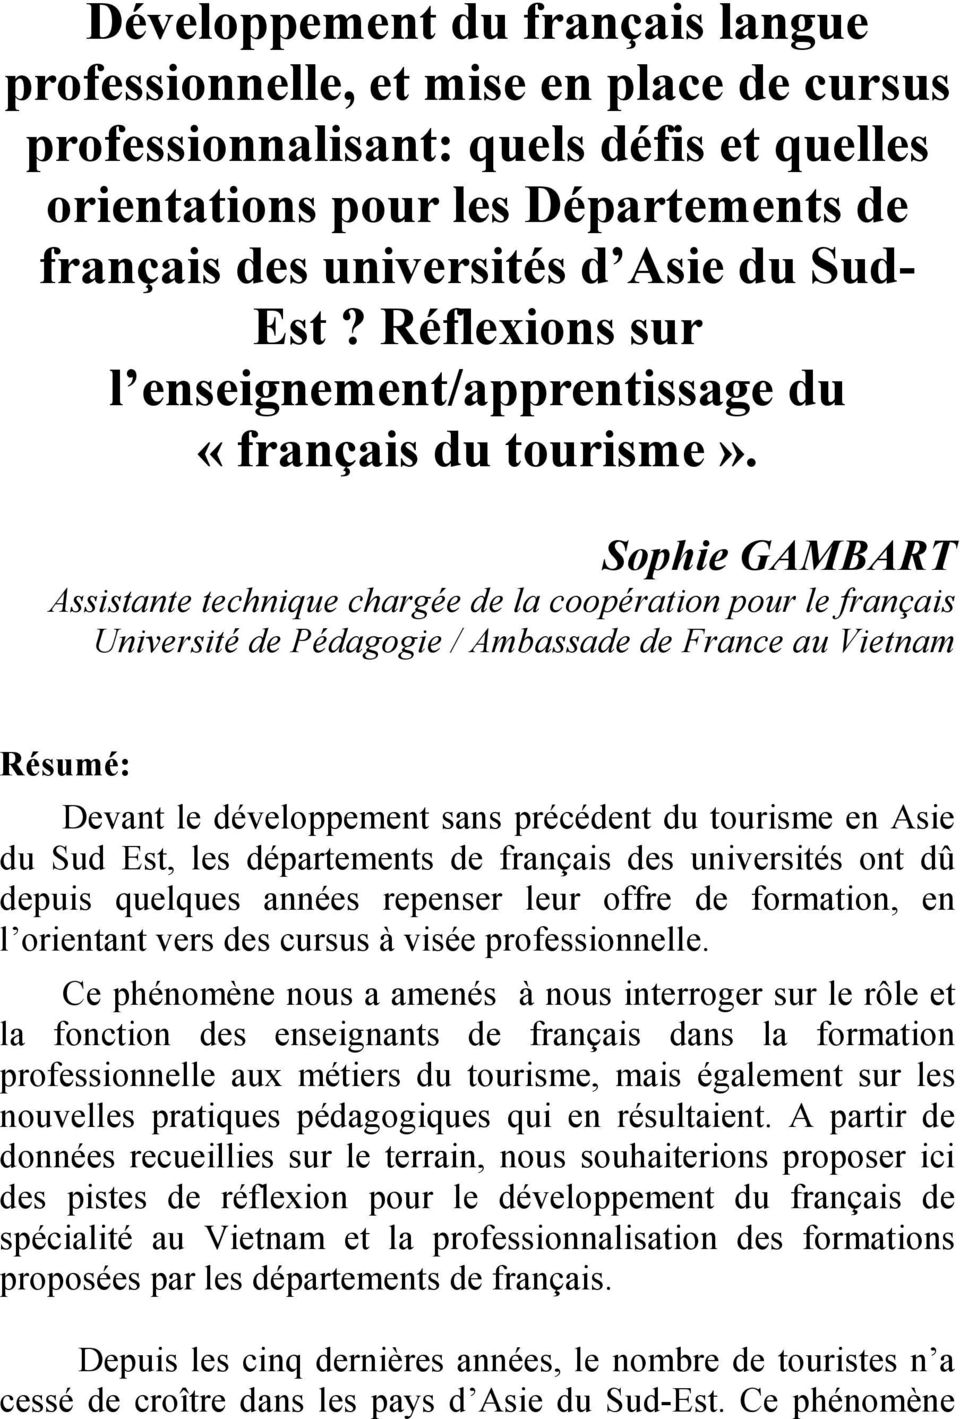 Sophie GAMBART Assistante technique chargée de la coopération pour le français Université de Pédagogie / Ambassade de France au Vietnam Résumé: Devant le développement sans précédent du tourisme en